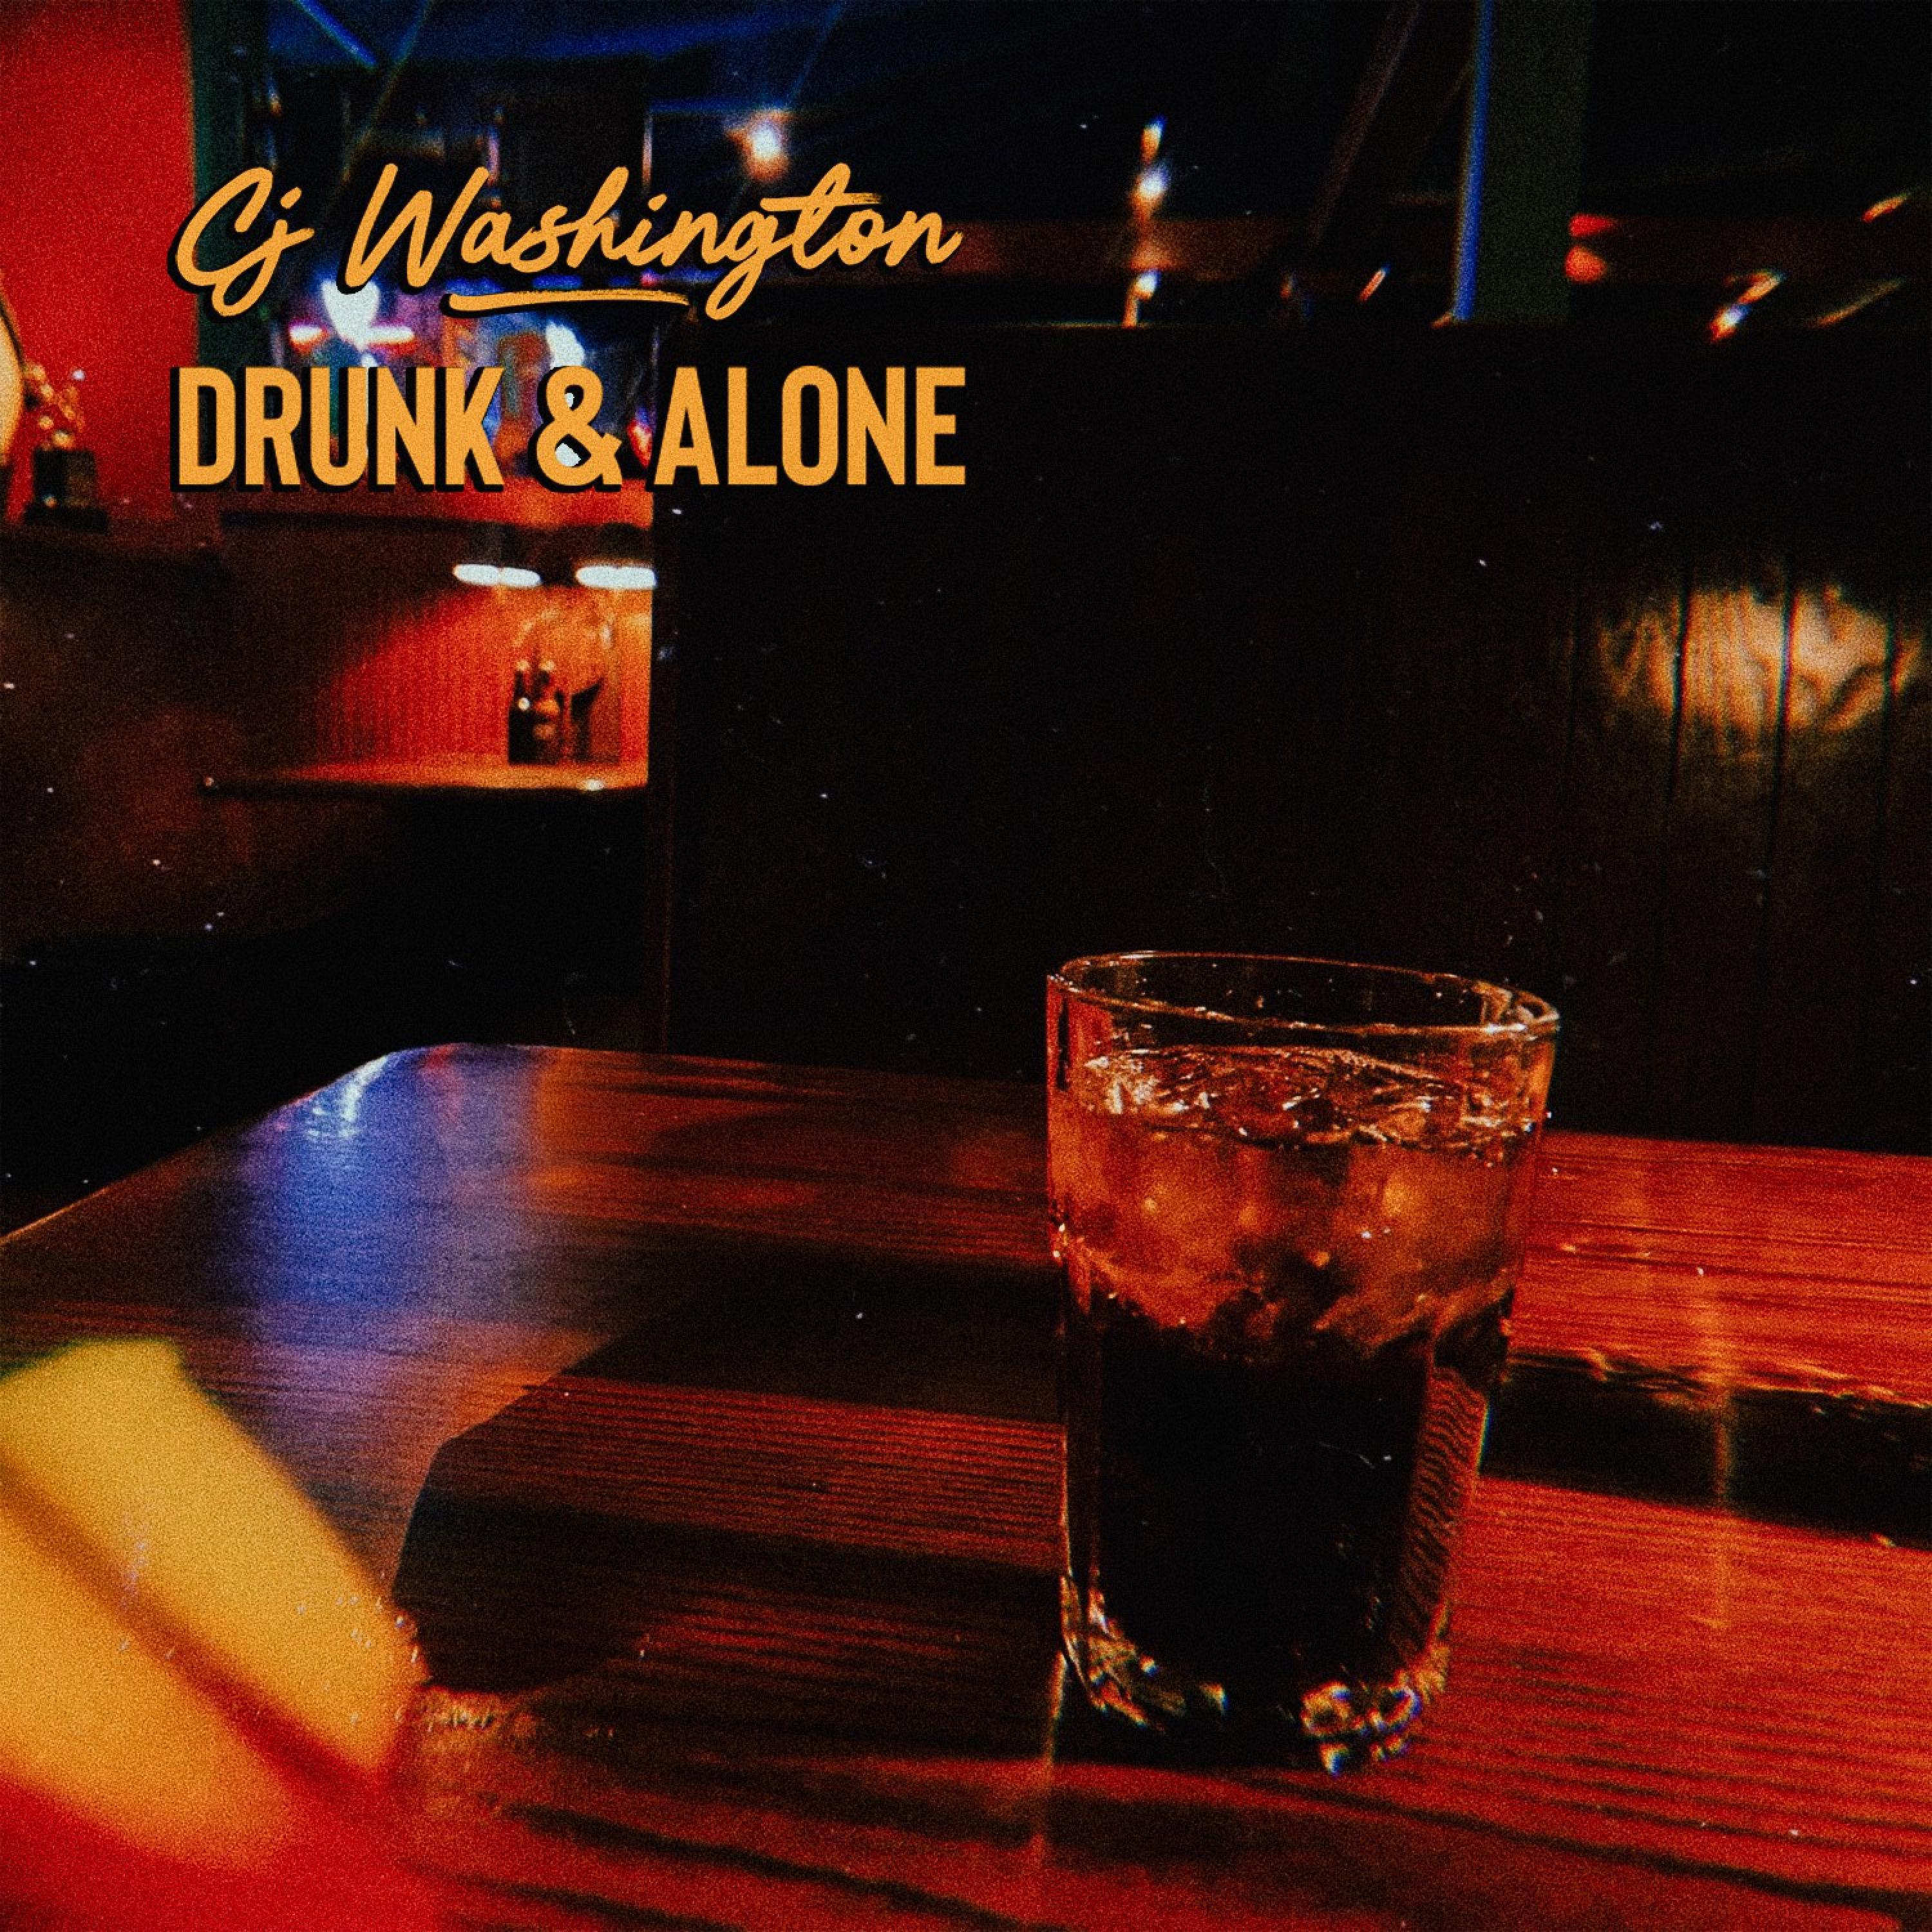 Cj Washington - Drunk & Alone